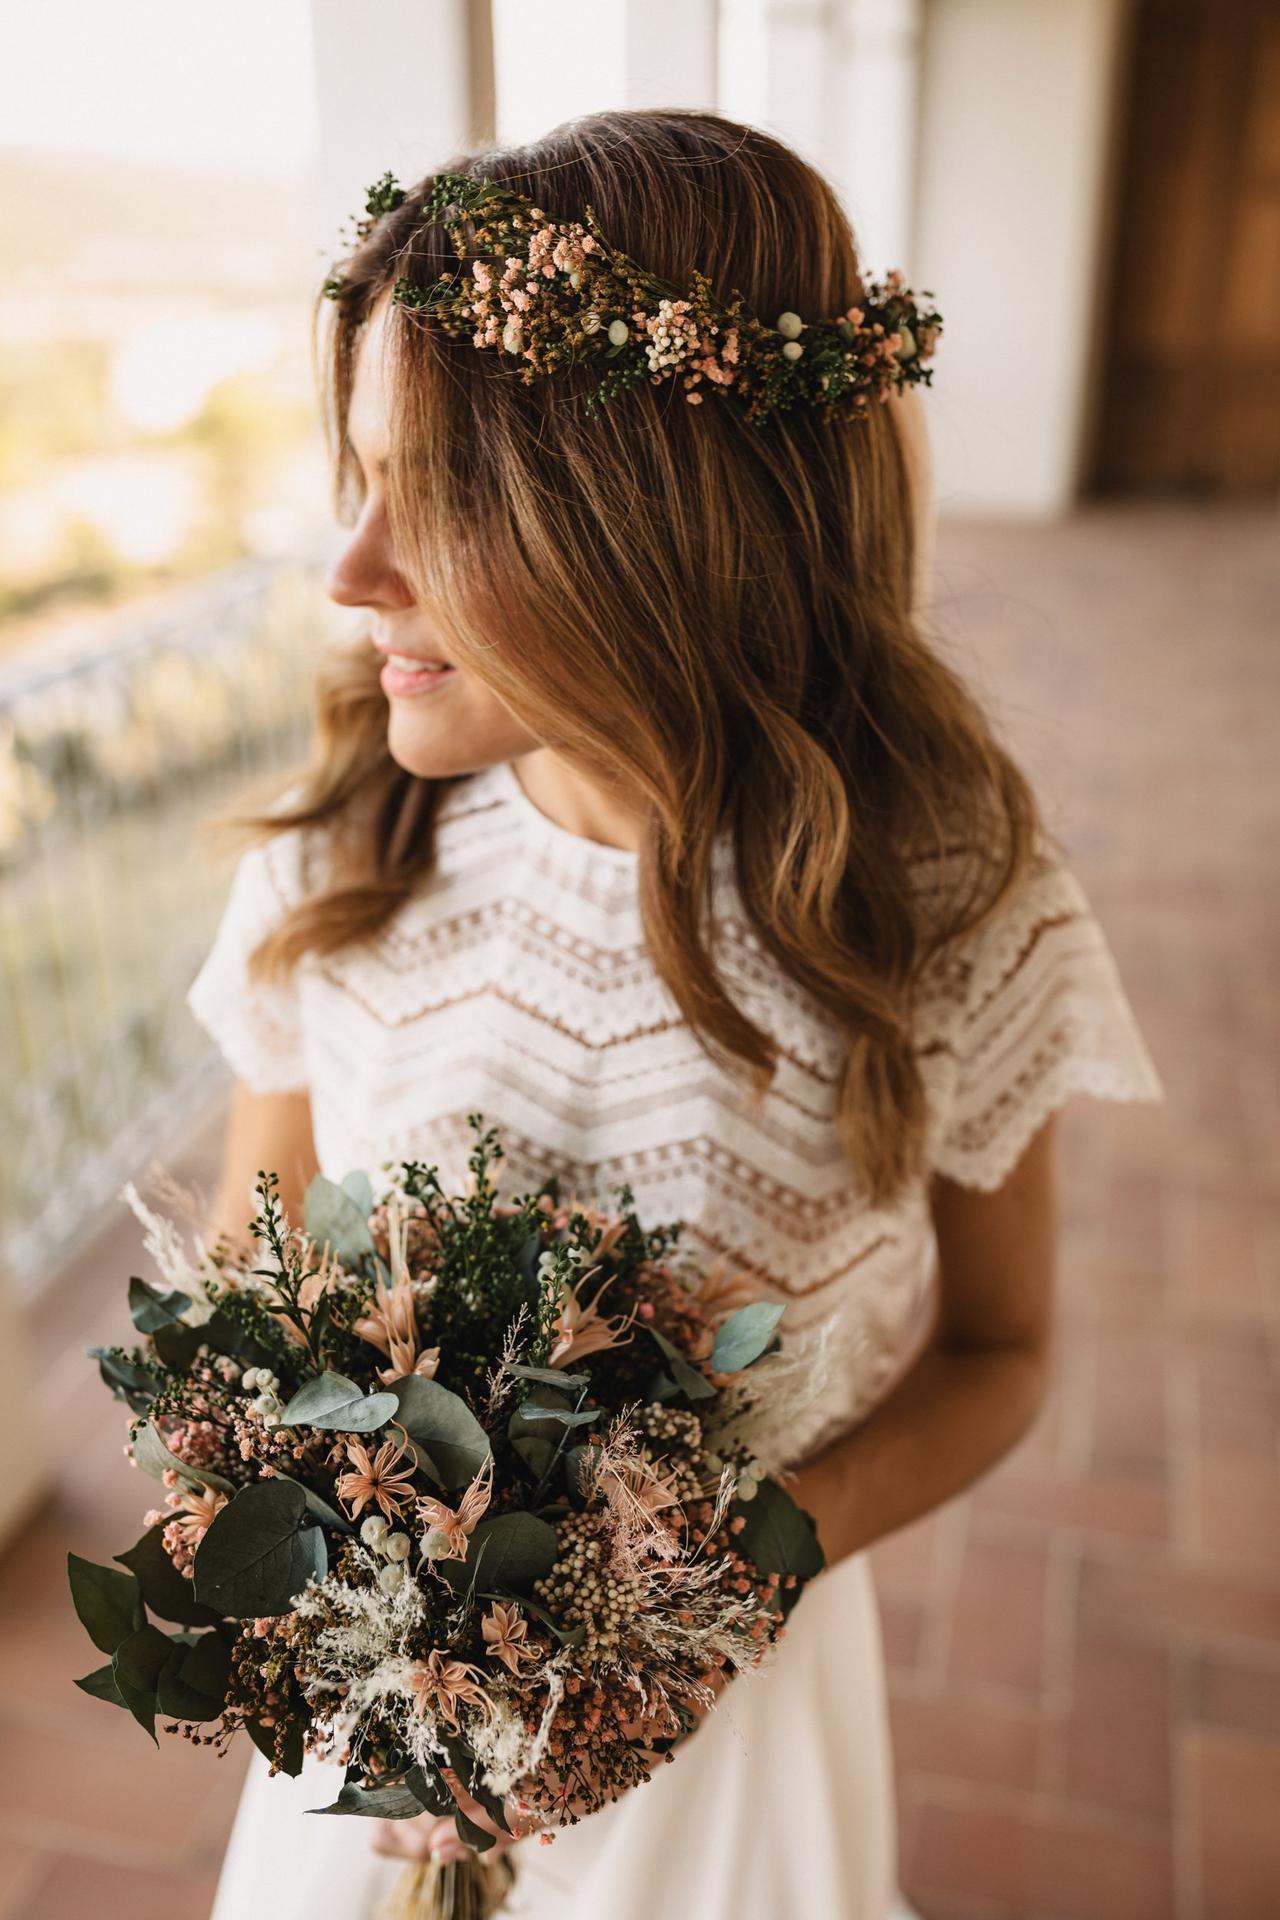 Paloma audible Sedante Coronas de flores para novias: ¡65 ideas para todos los gustos y estilos!